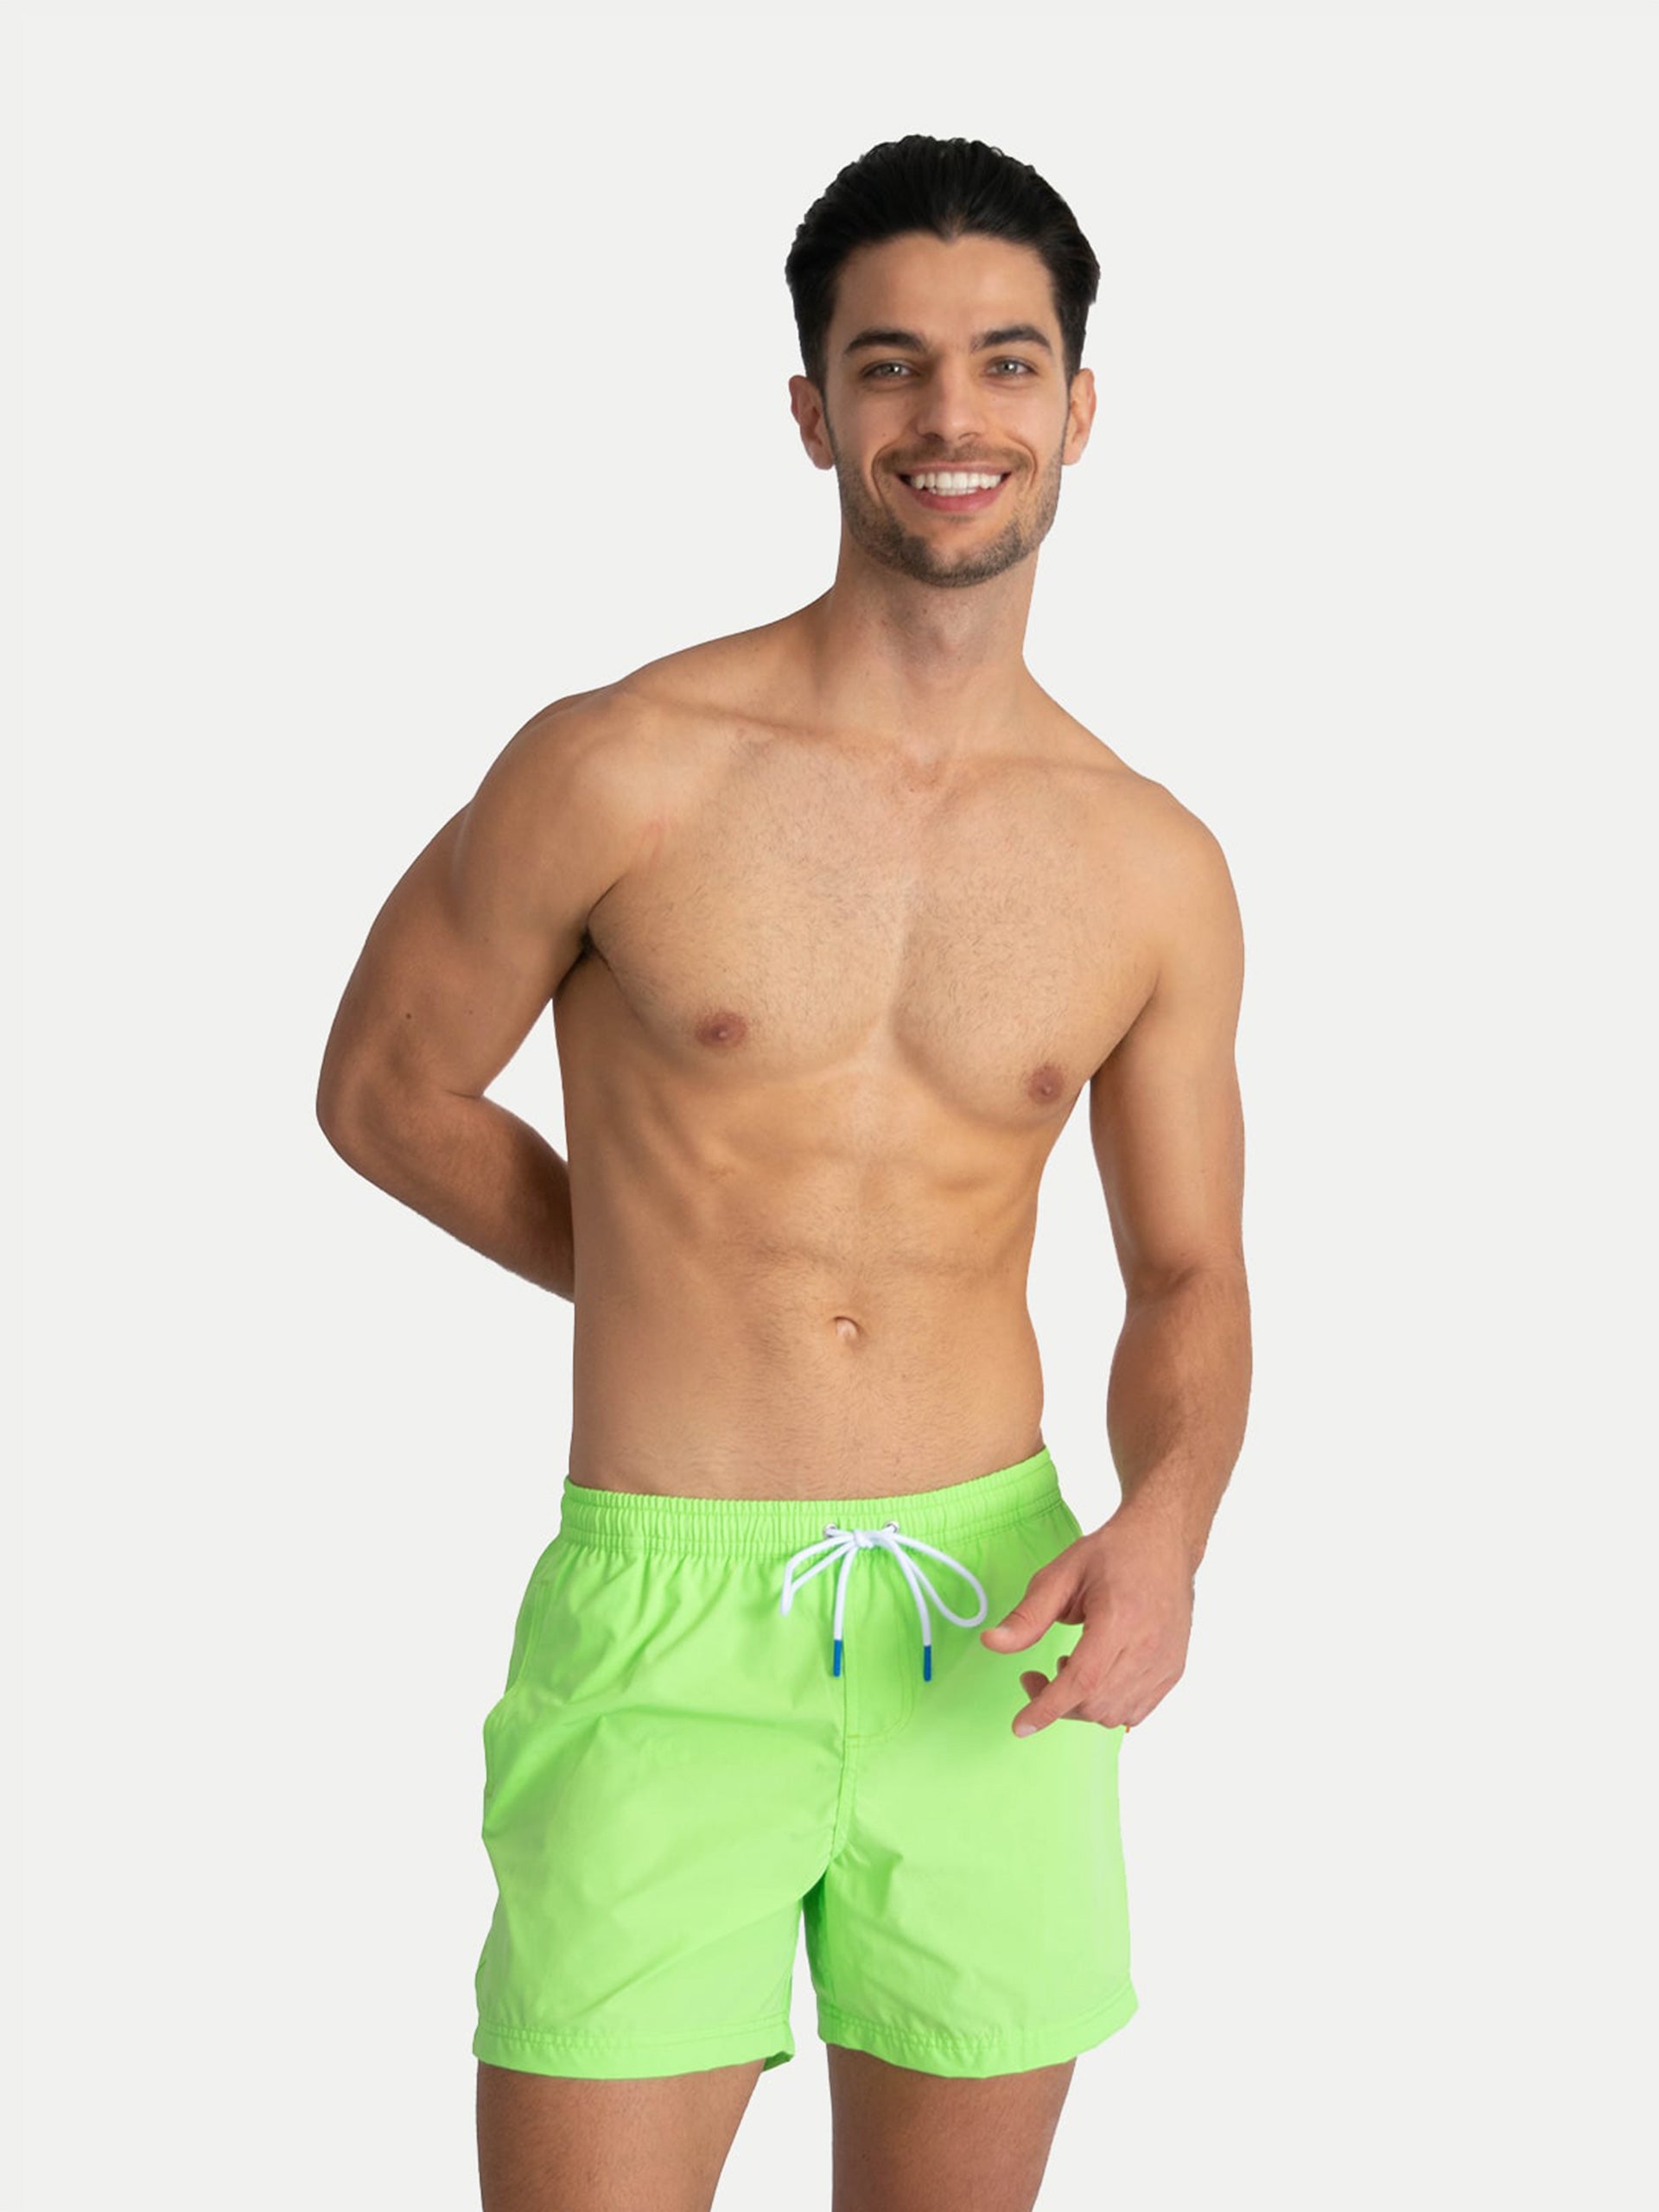 ‘Basic Green’ Swim Trunks for Men by 98 Coast Av.